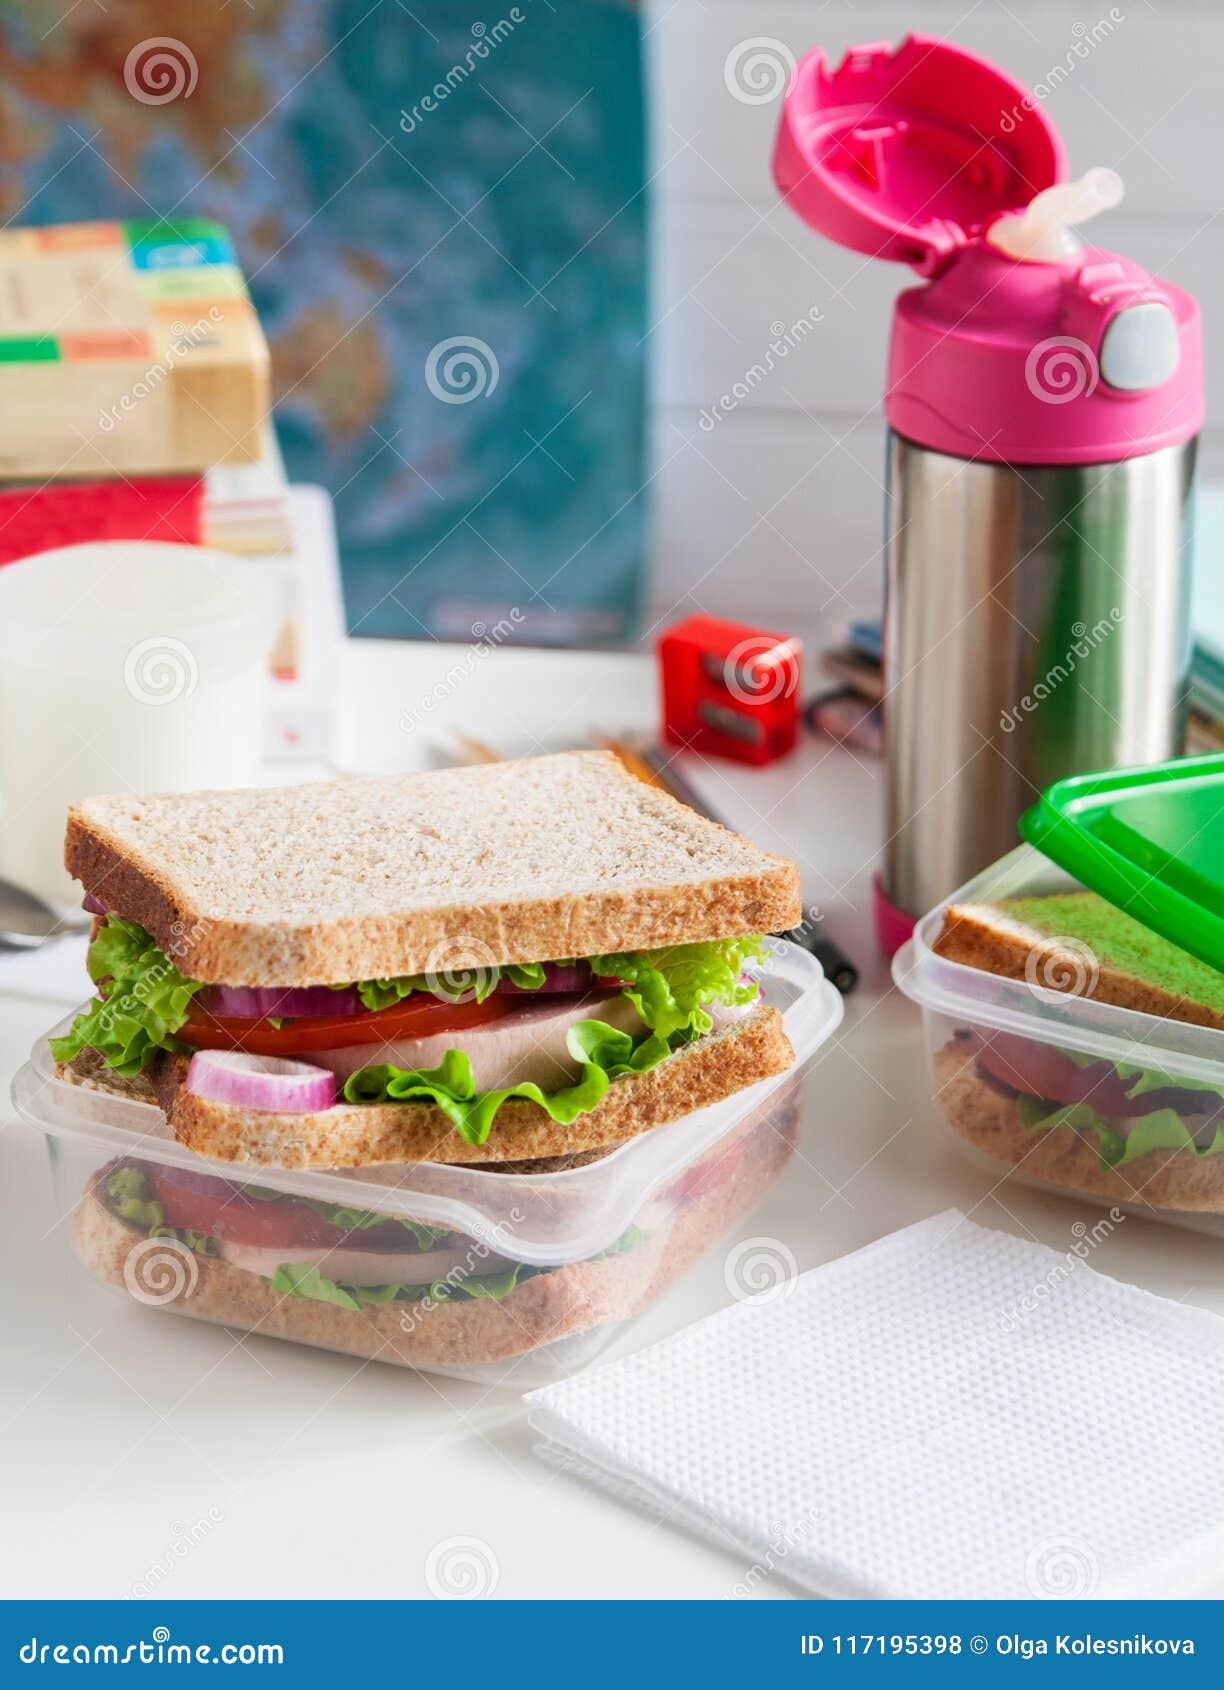 School Breakfast Fruit Sandwich. Stock Photo - Image of metal, back:  117195398